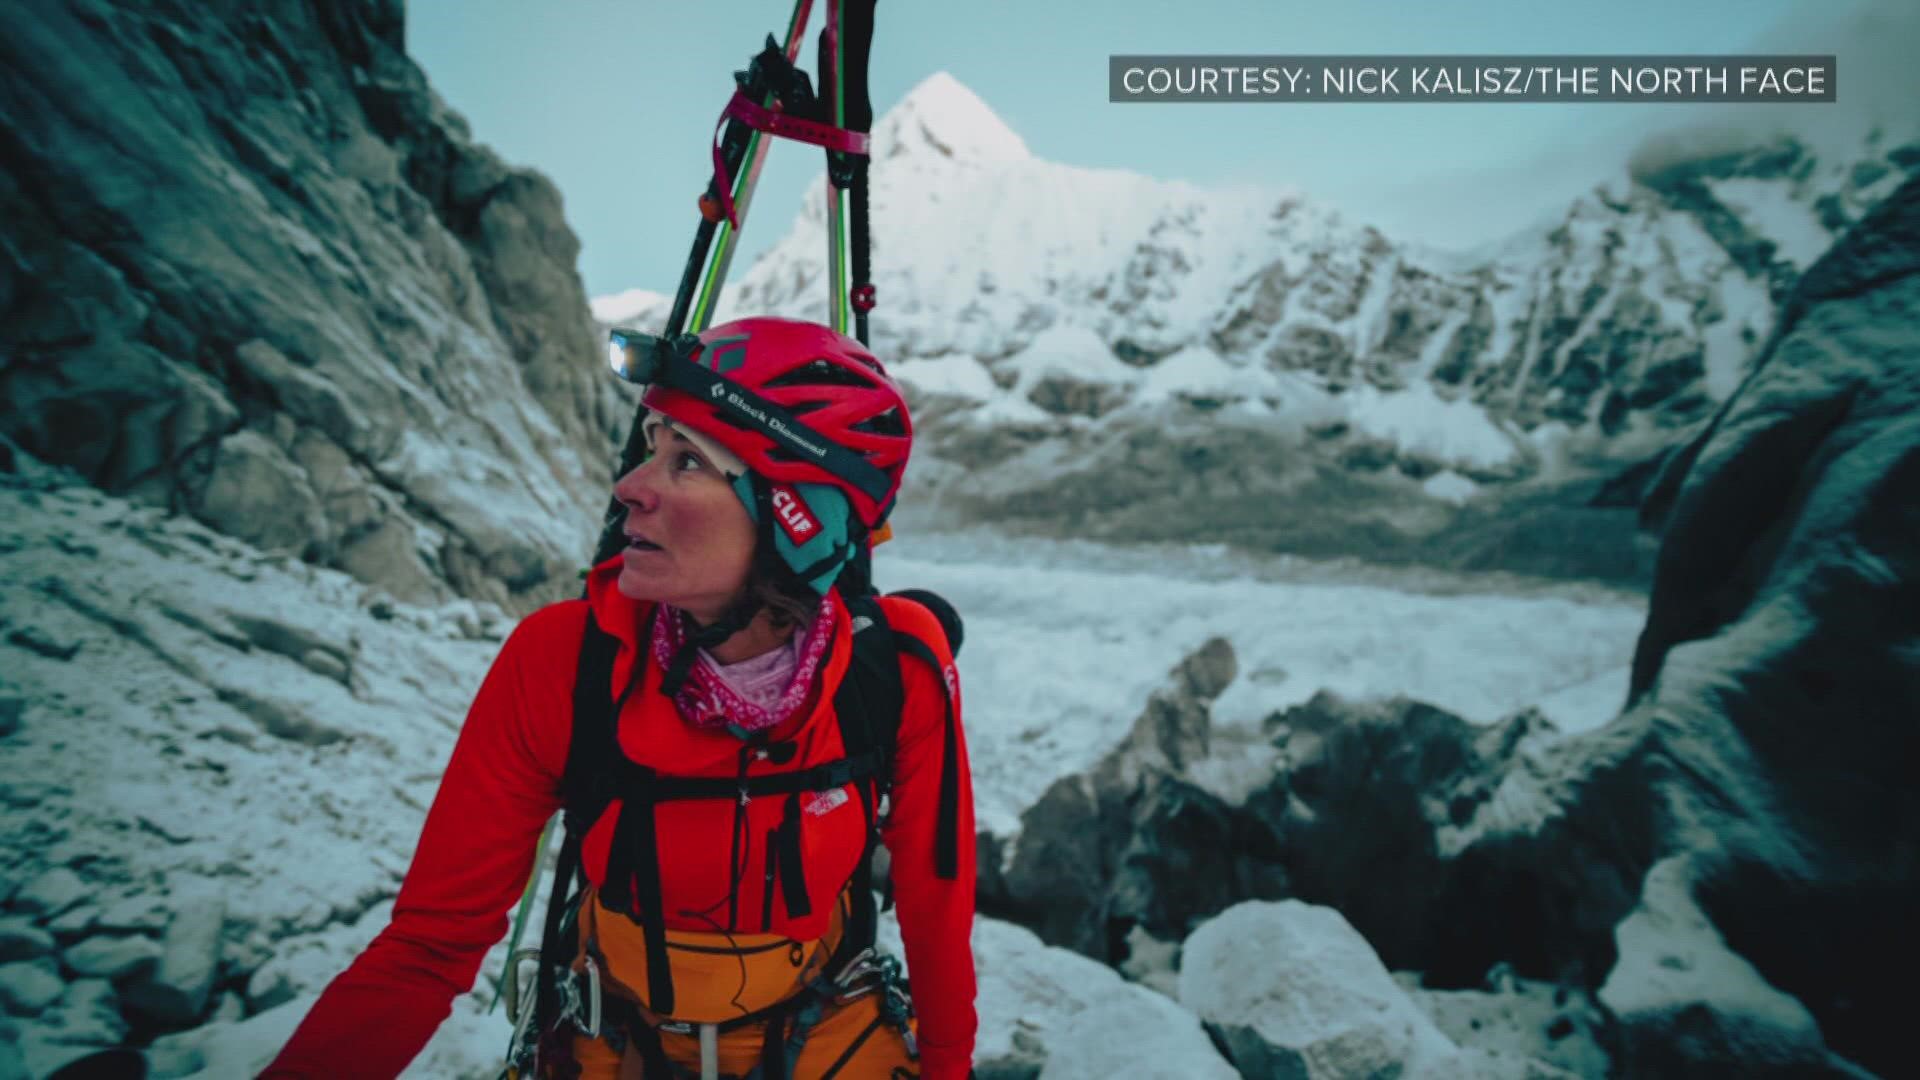 The body of U.S. ski-mountaineer Hilaree Nelson was found Wednesday in Nepal